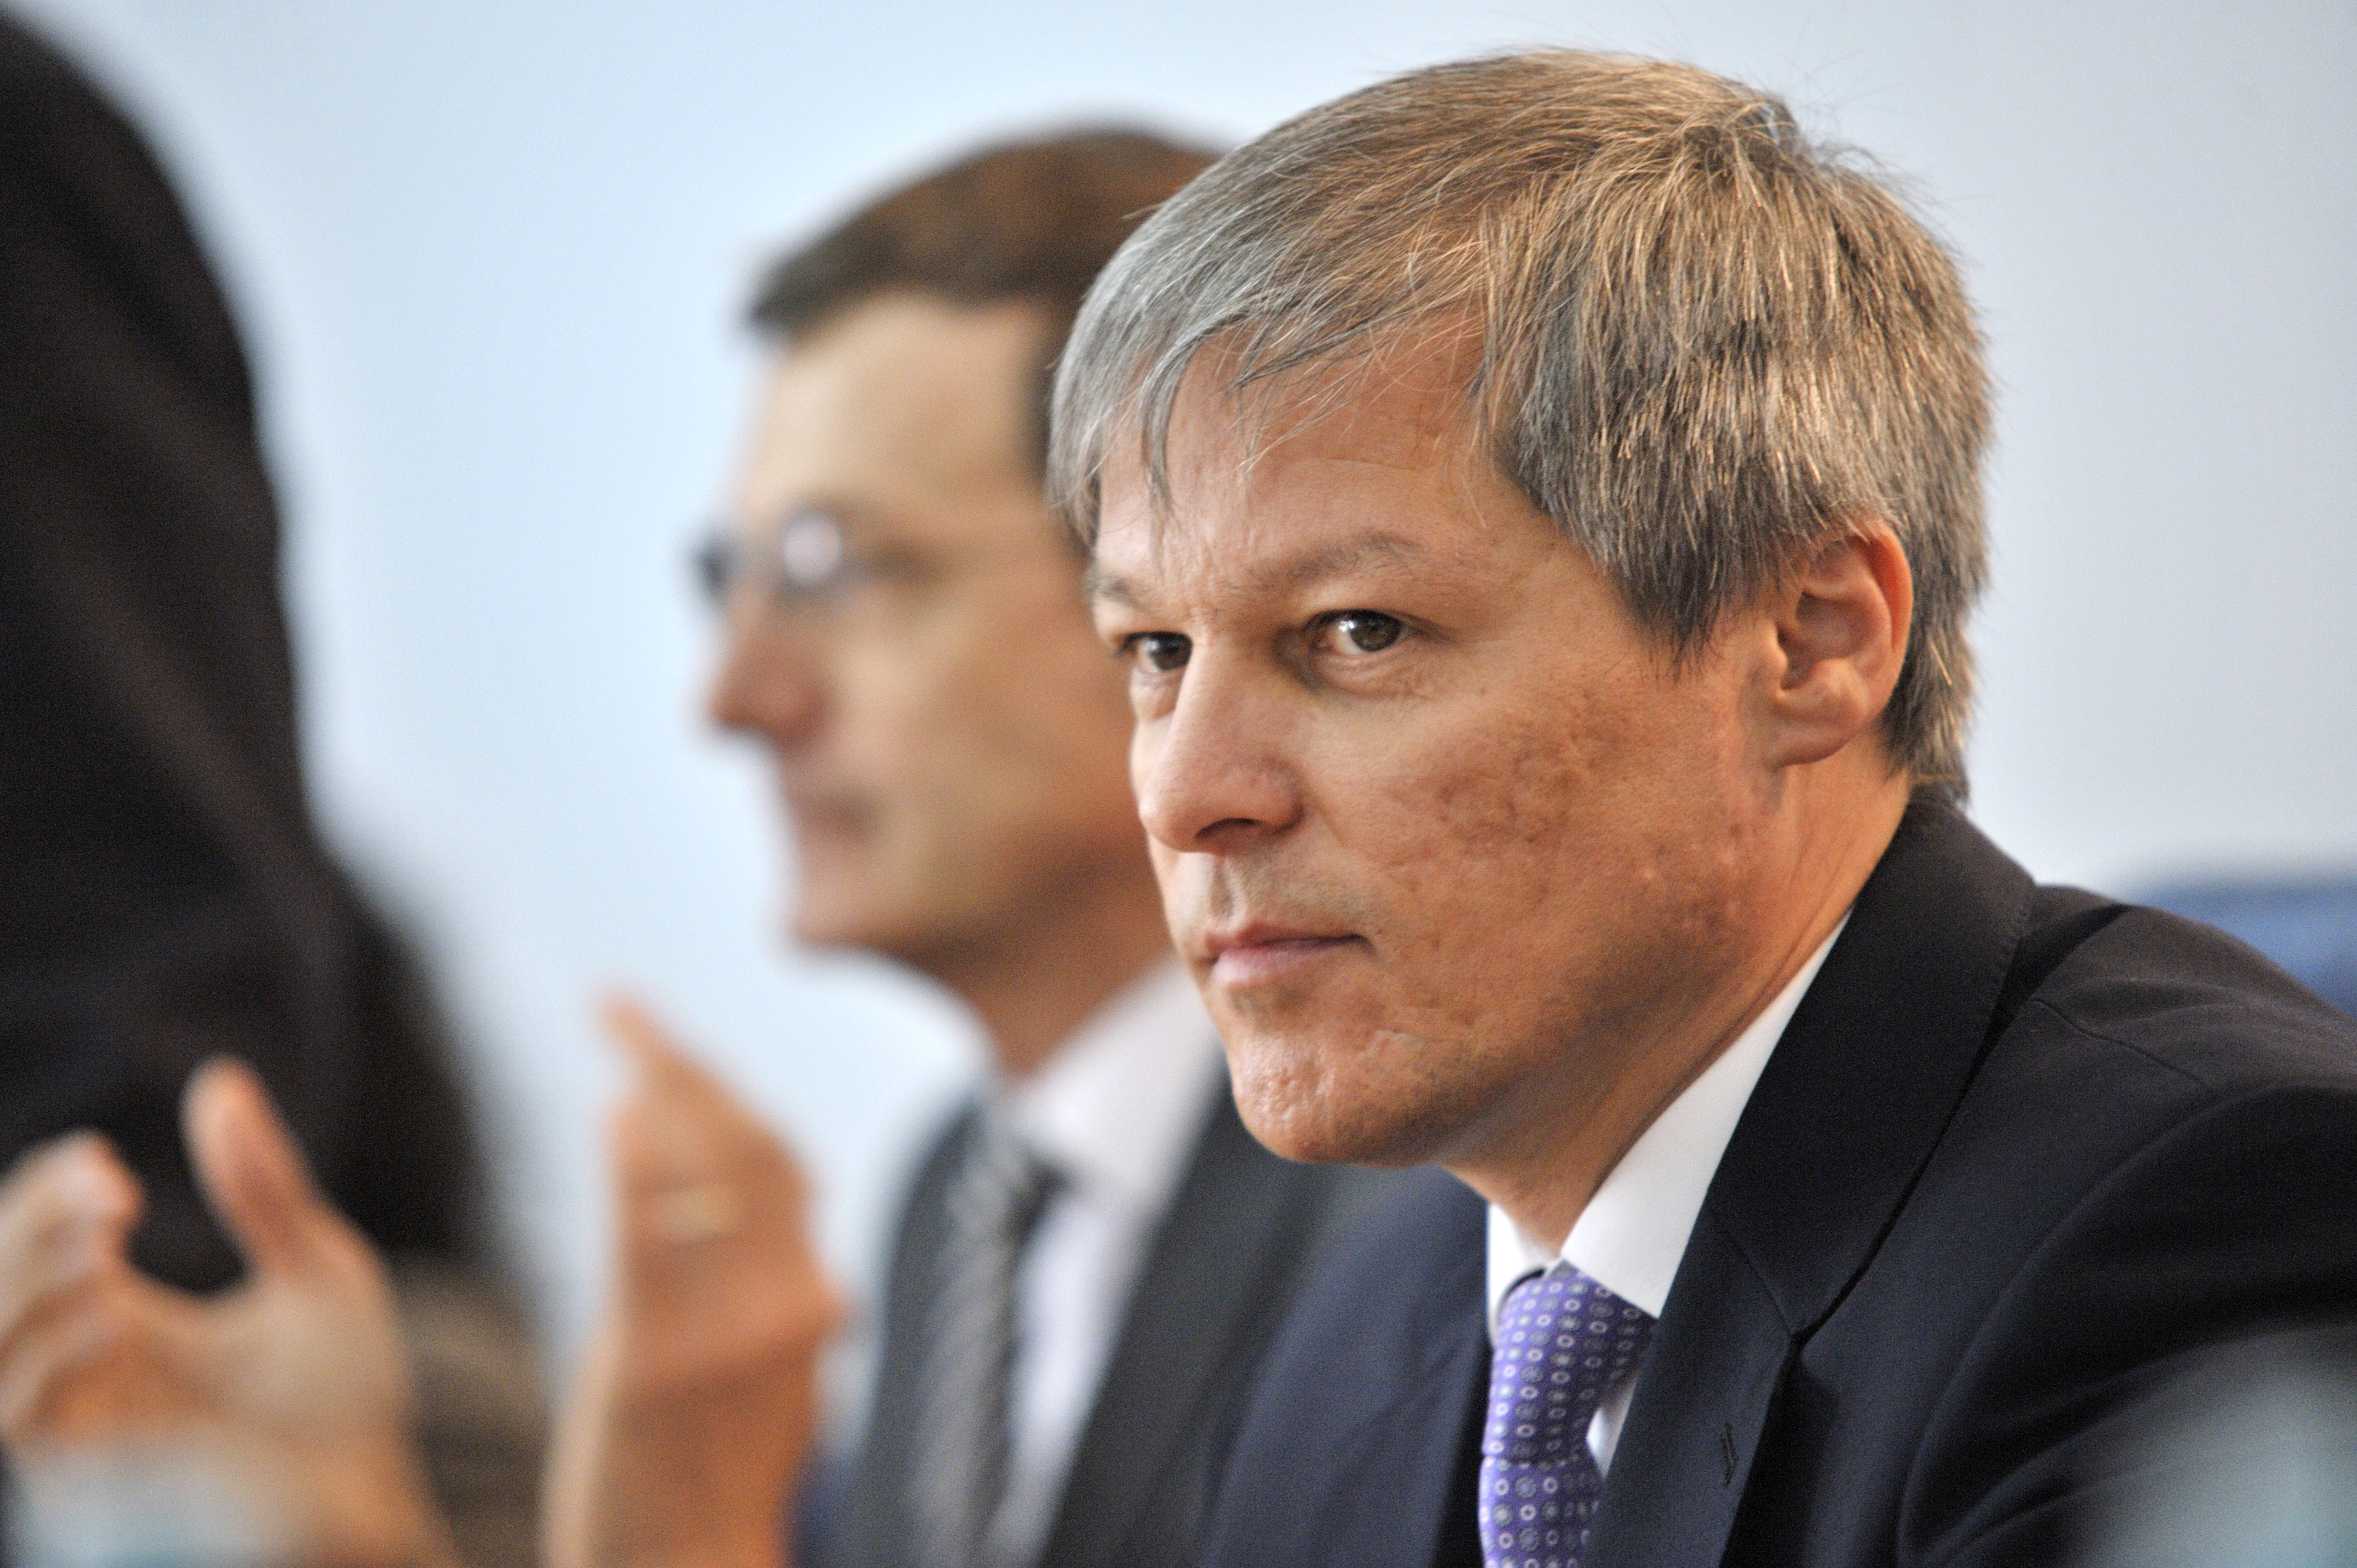 Cioloş, în şedinţa PSD: Intenţia mea nu e de a rade tot, să vedeţi acest Guvern ca un partener